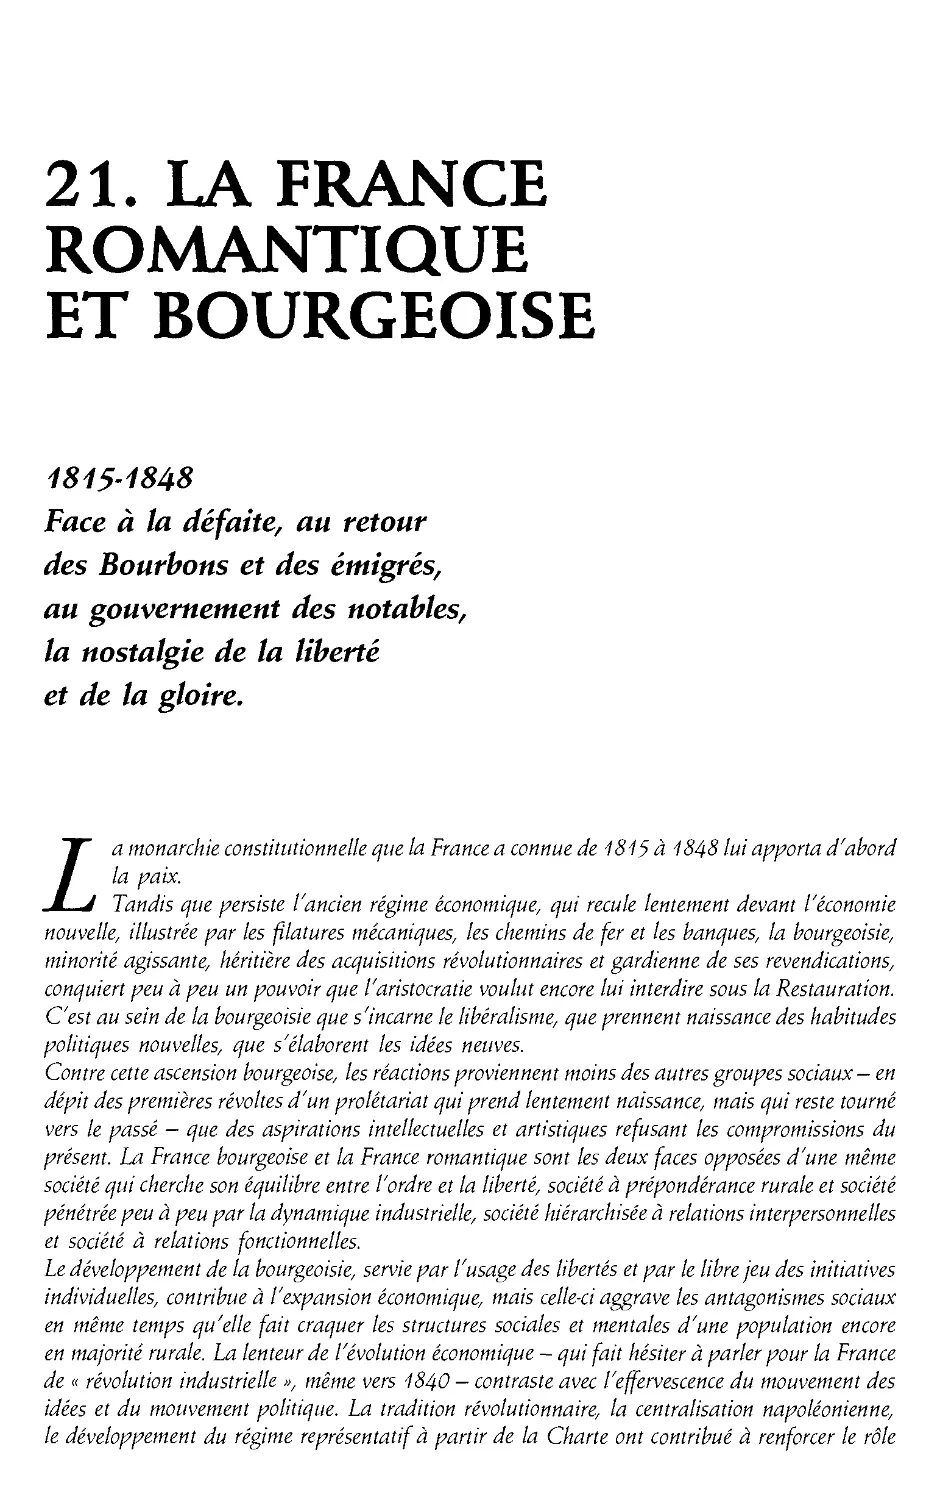 21. La France romantique et bourgeoise, 1815-1848 [584]